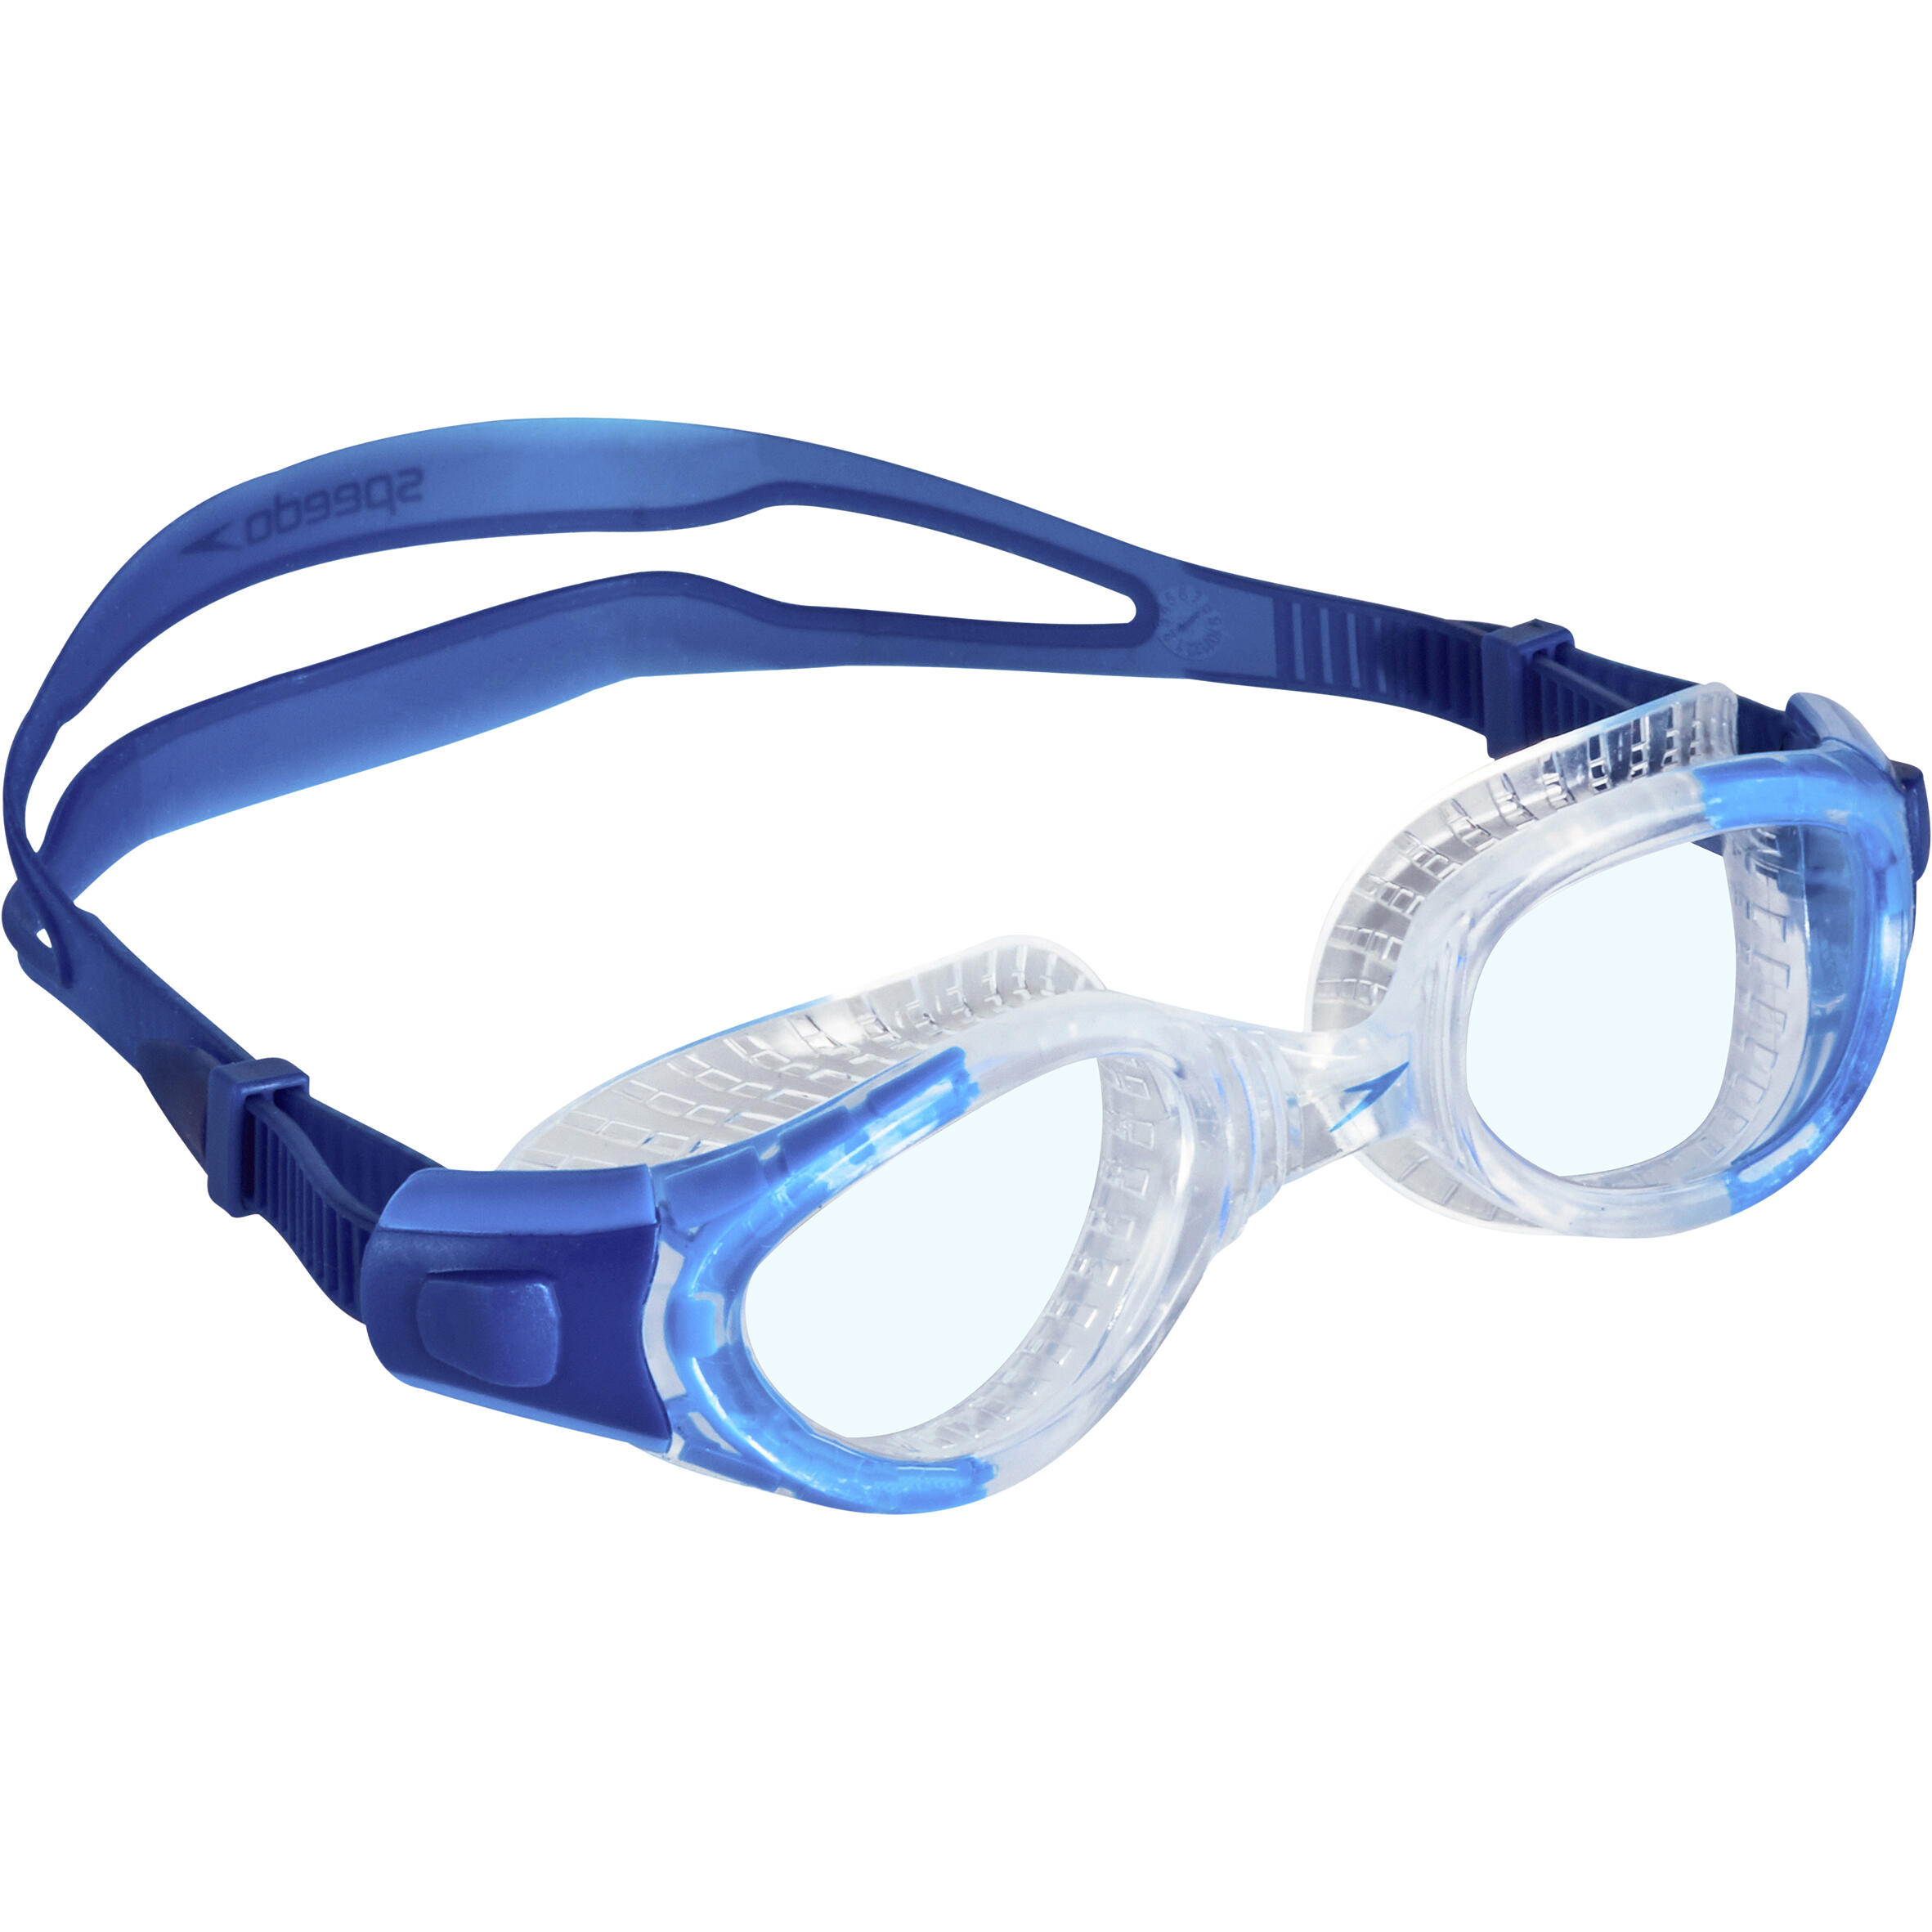 Ochelari Înot Futura Biofuse Flexiseal Lentile Transparente Albastru